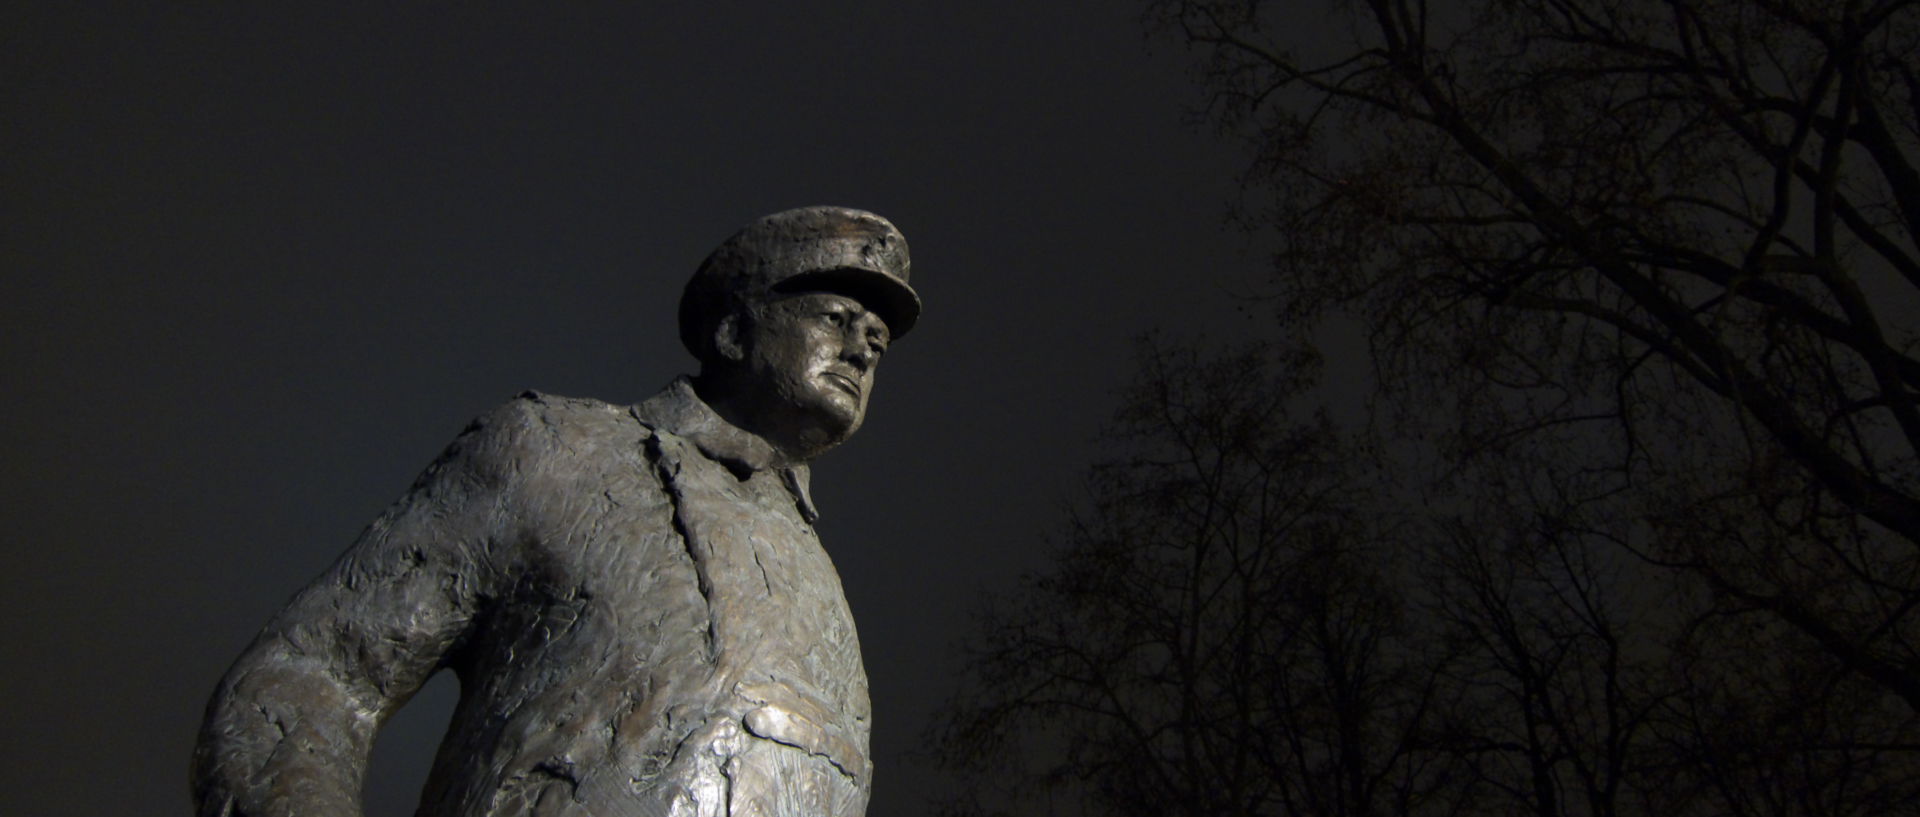 Mardi 13 janvier 2009, 21:17, statue de Winston Churchill, au Petit Palais, à Paris.